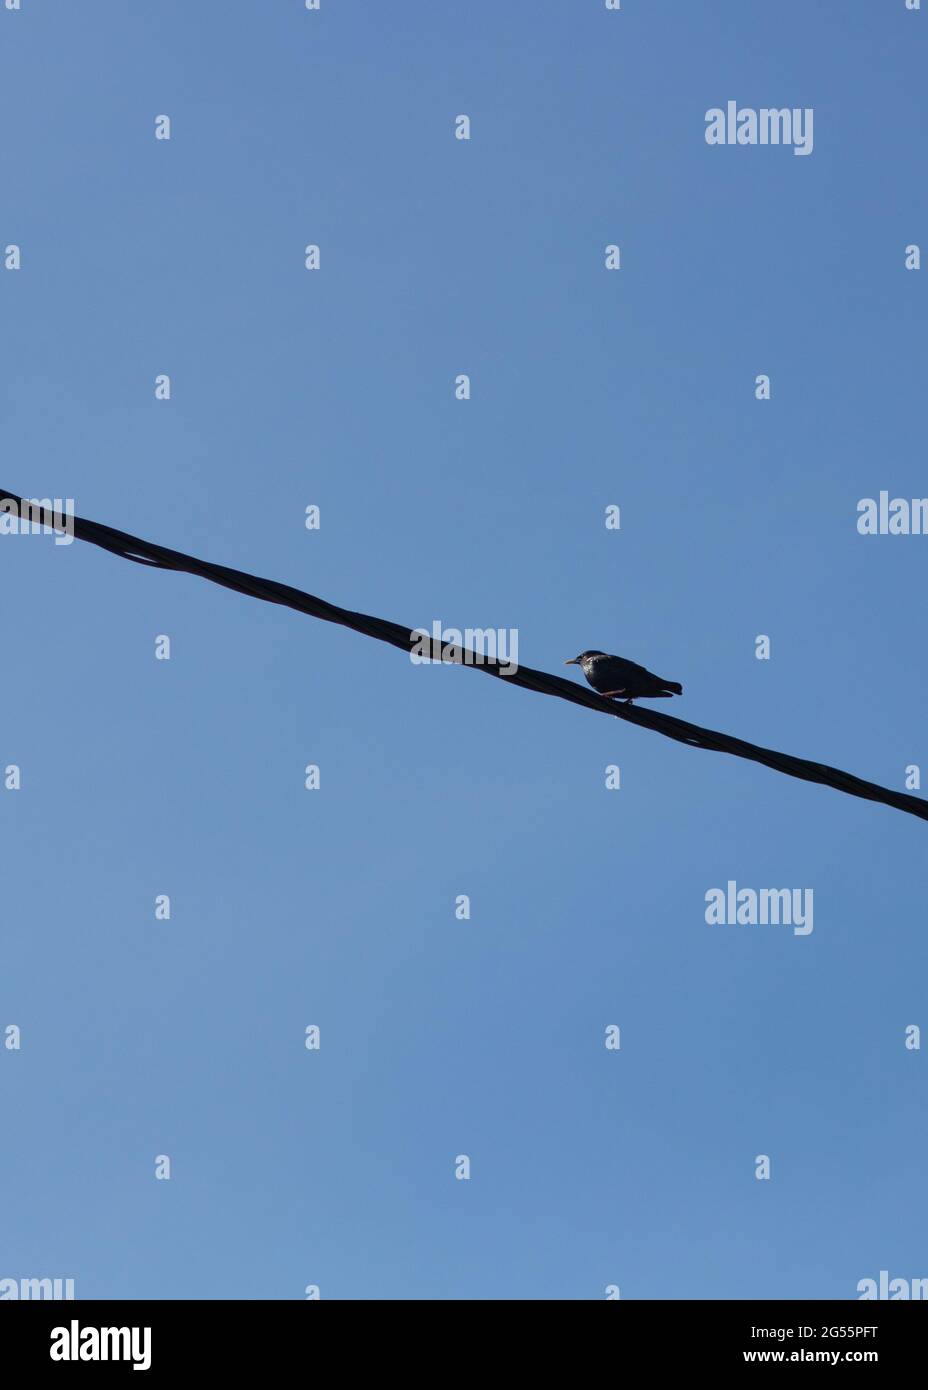 Pájaro pequeño perchando en el cable eléctrico aislado en un fondo azul claro del cielo. Foto minimalista de pájaro en alambre. Imagen vertical con espacio vacío Foto de stock